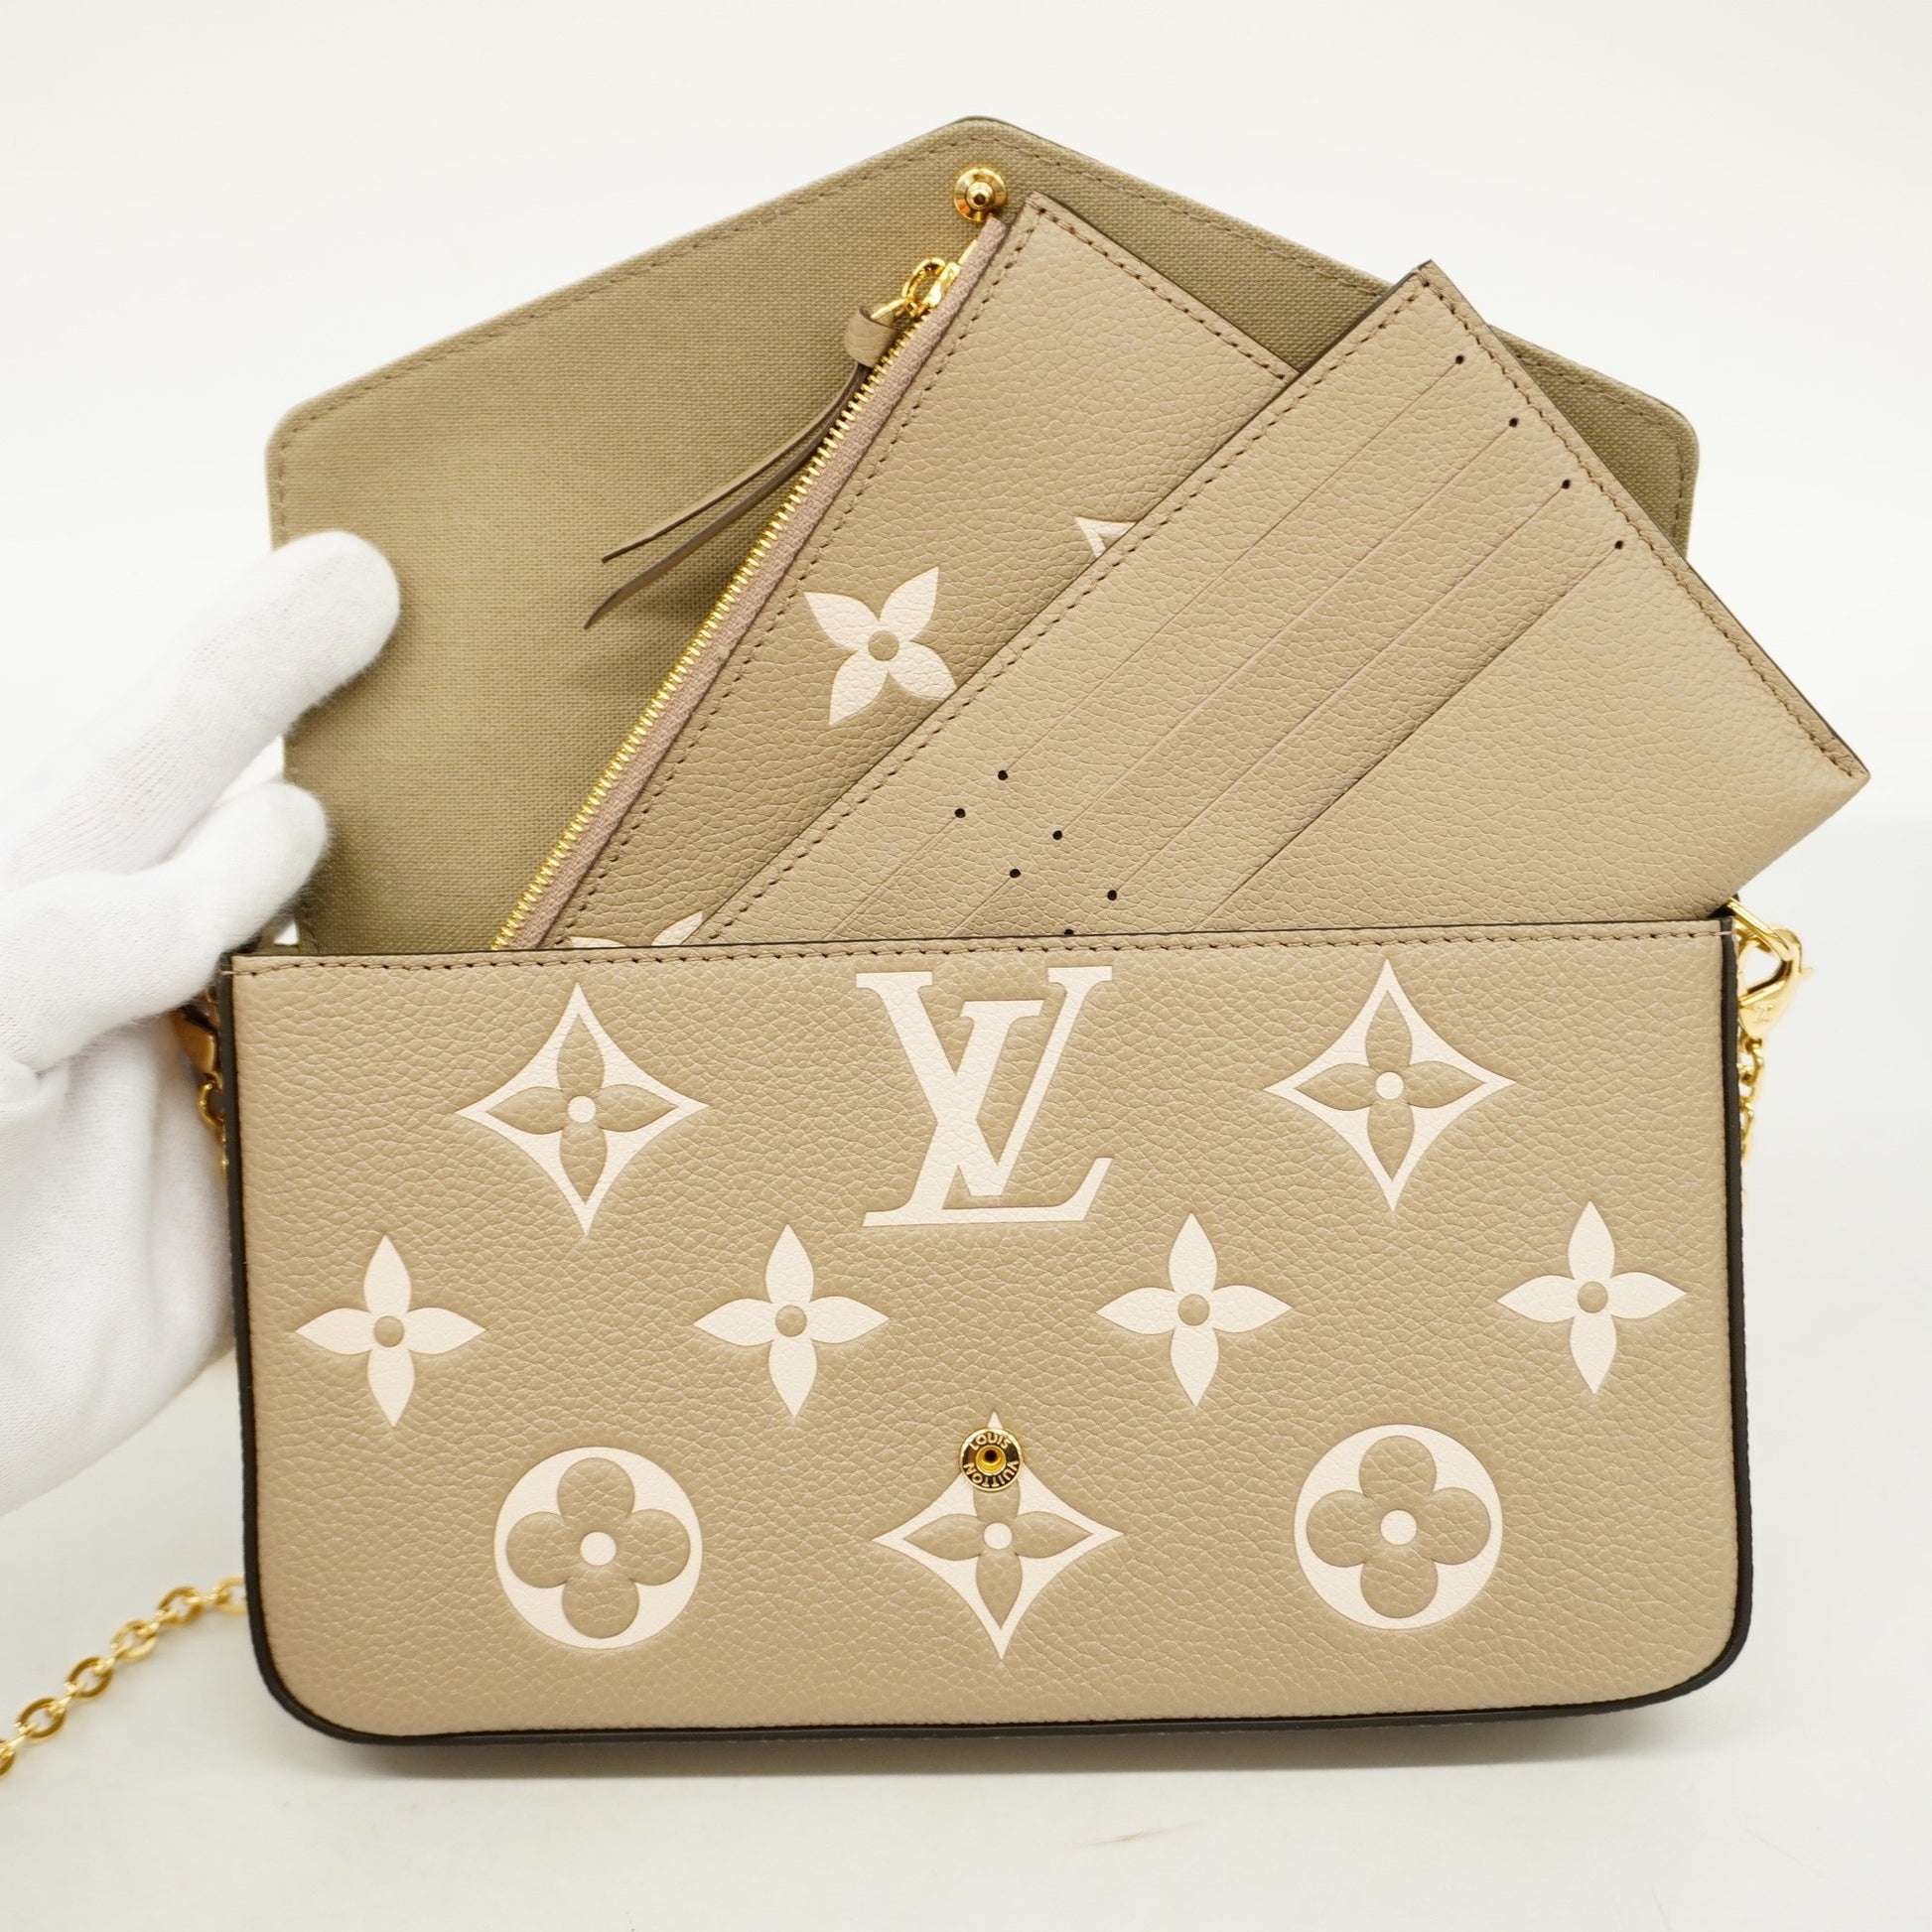 Louis Vuitton Félicie Handbag